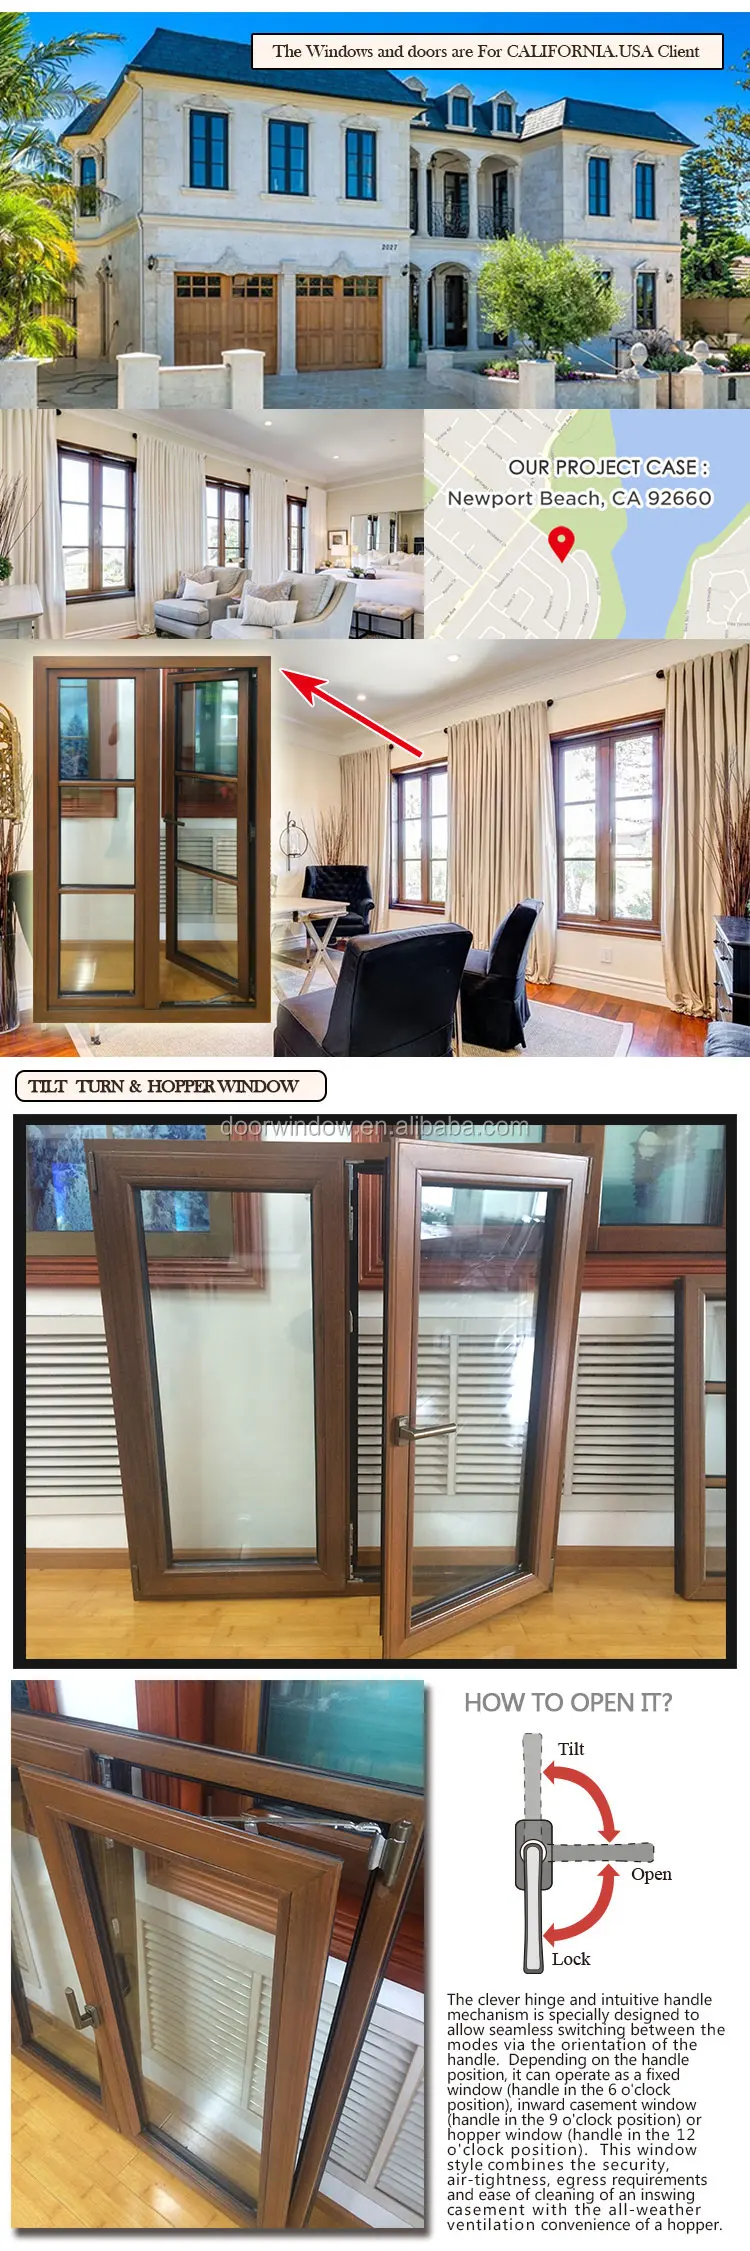 Ce certificate aluminum casement window and door extrusion aluminium profile with